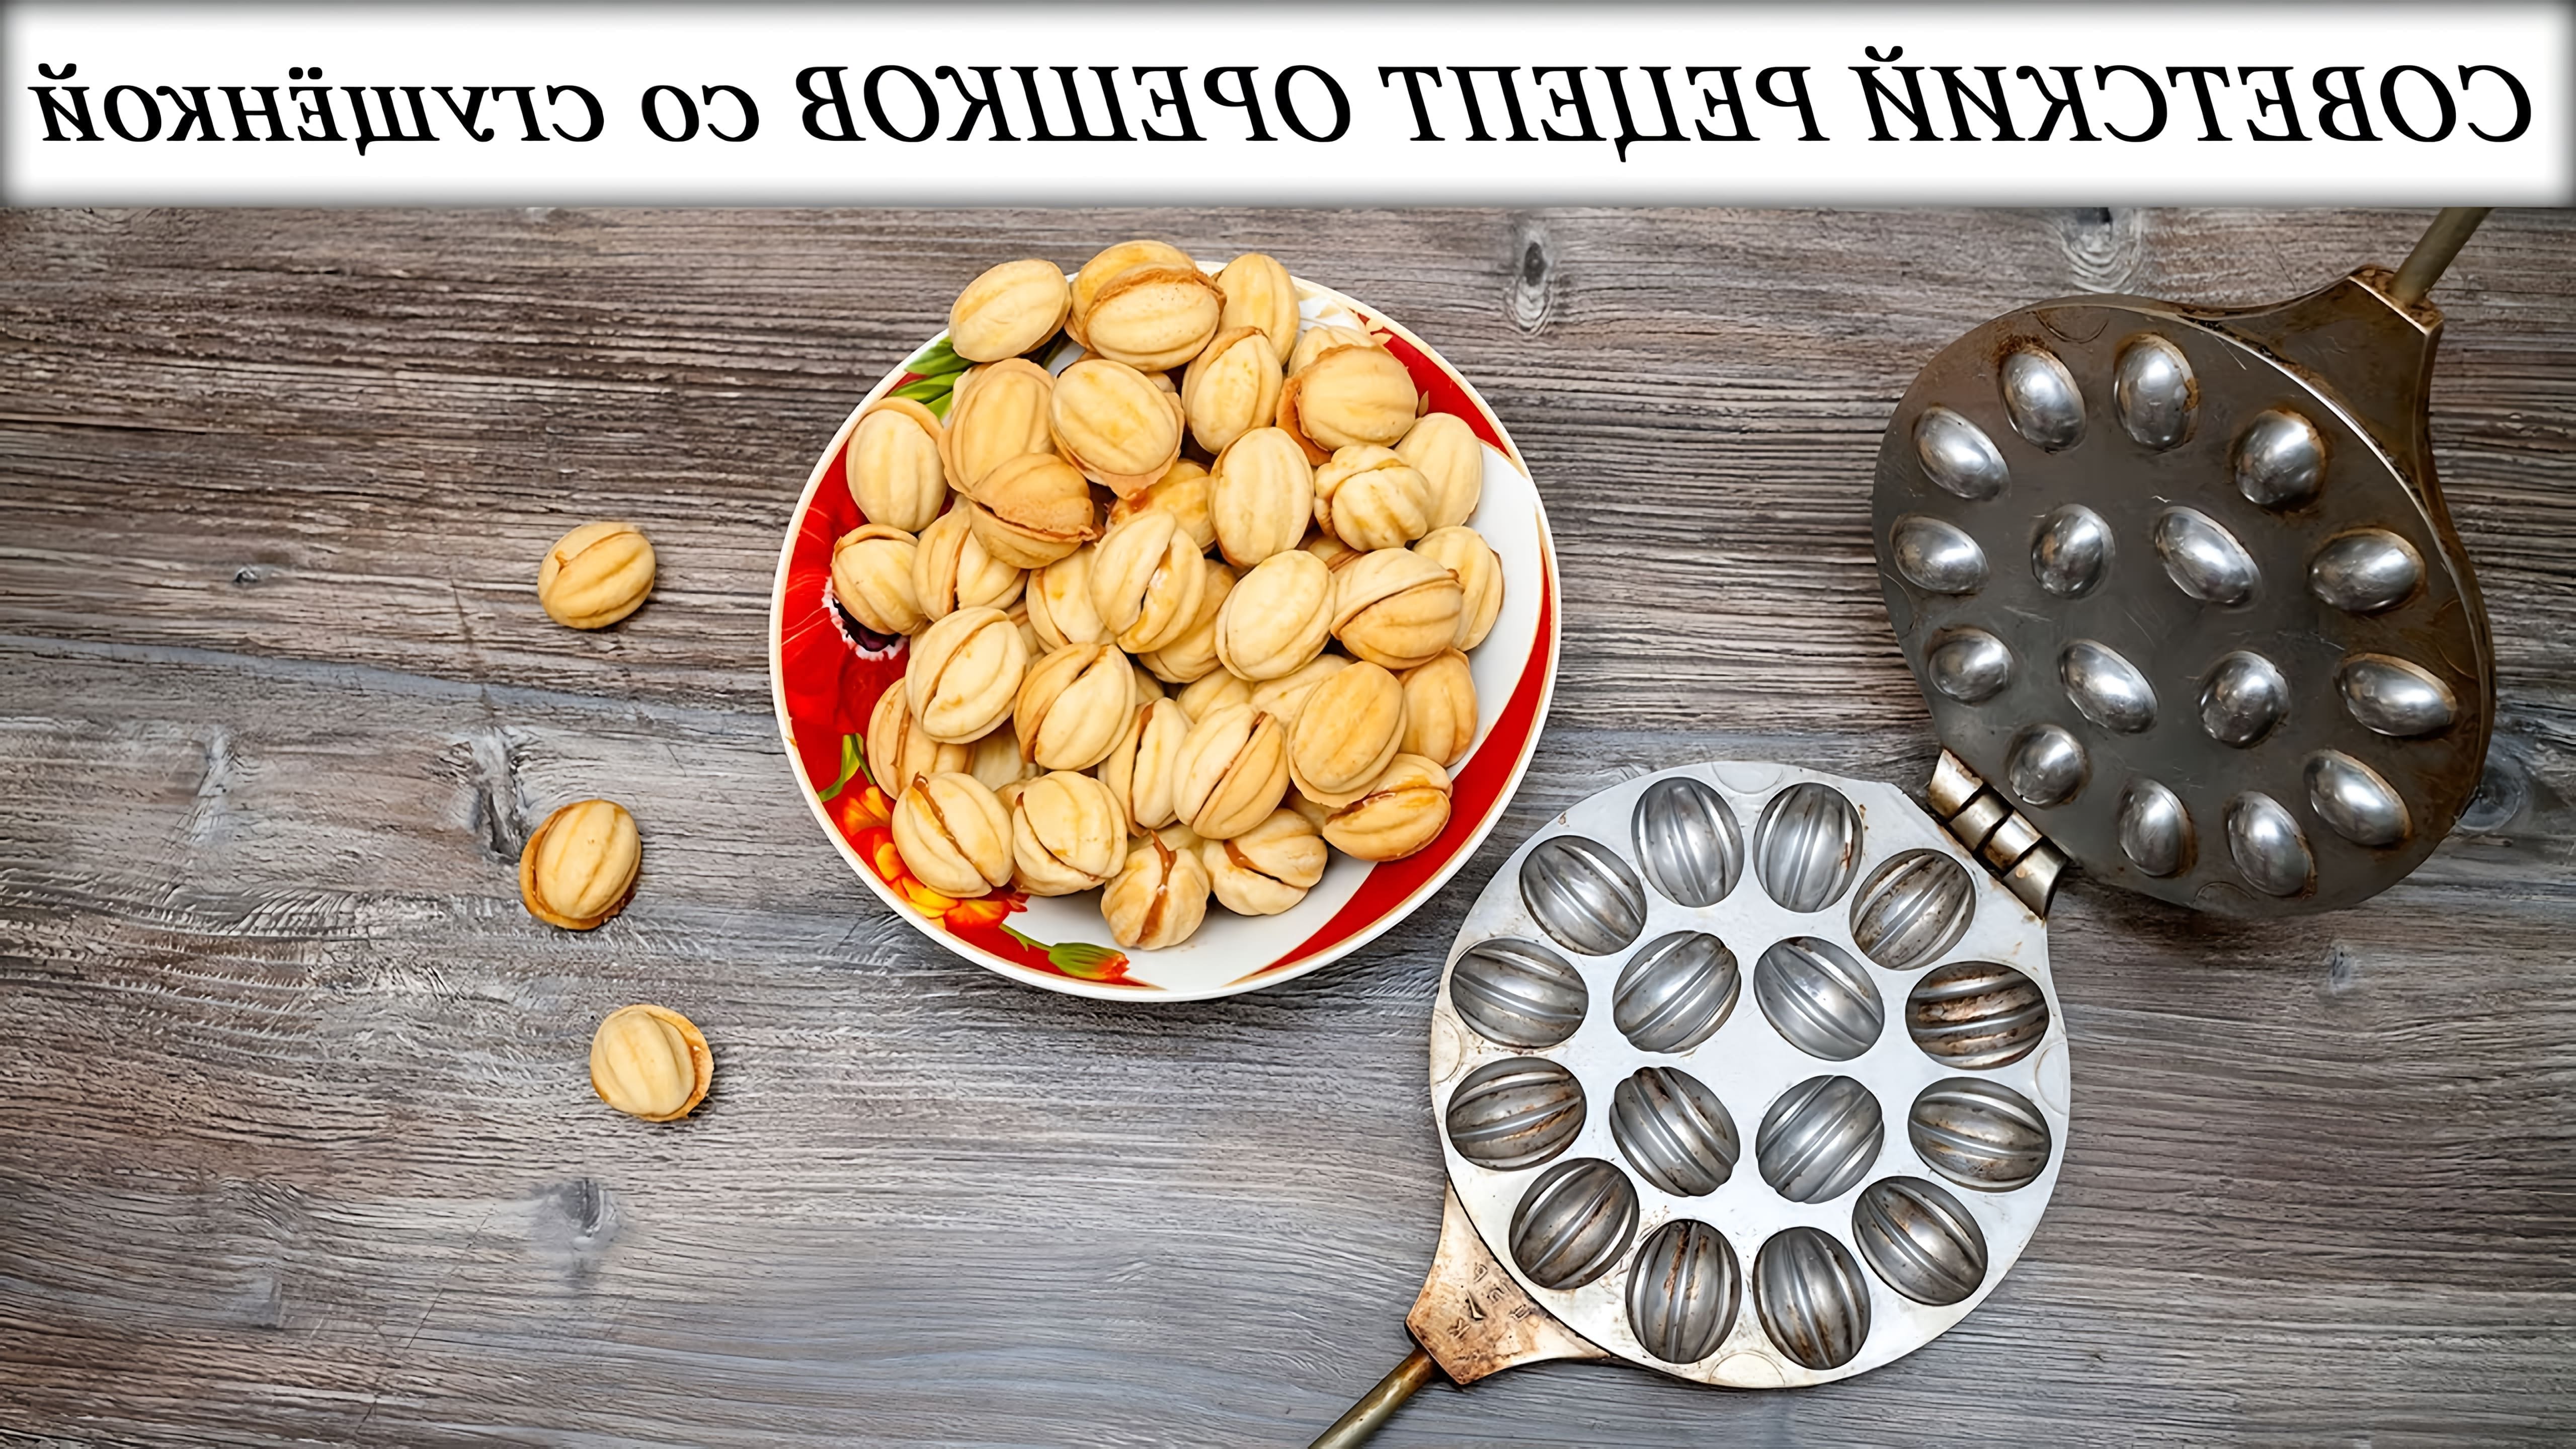 В этом видео демонстрируется рецепт приготовления орешков со сгущенкой по старому и проверенному рецепту